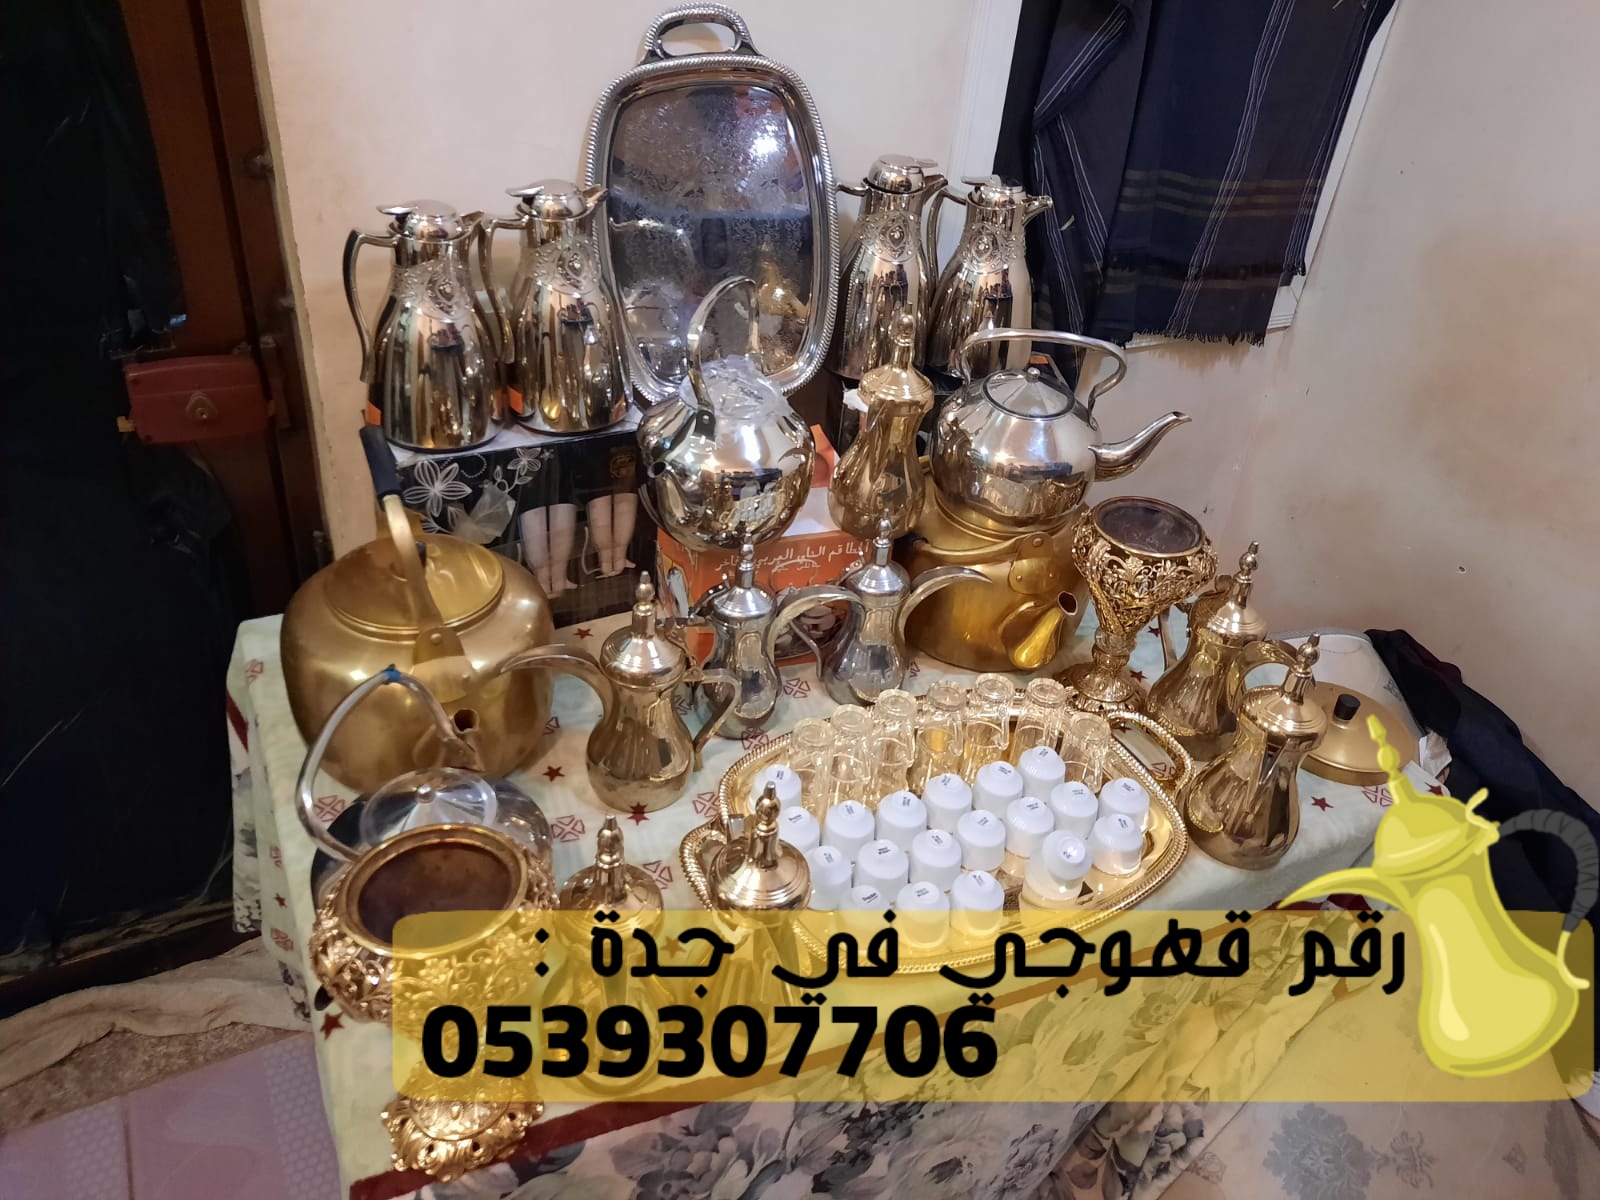 صبابين في جدة و مباشرين قهوة,0539307706